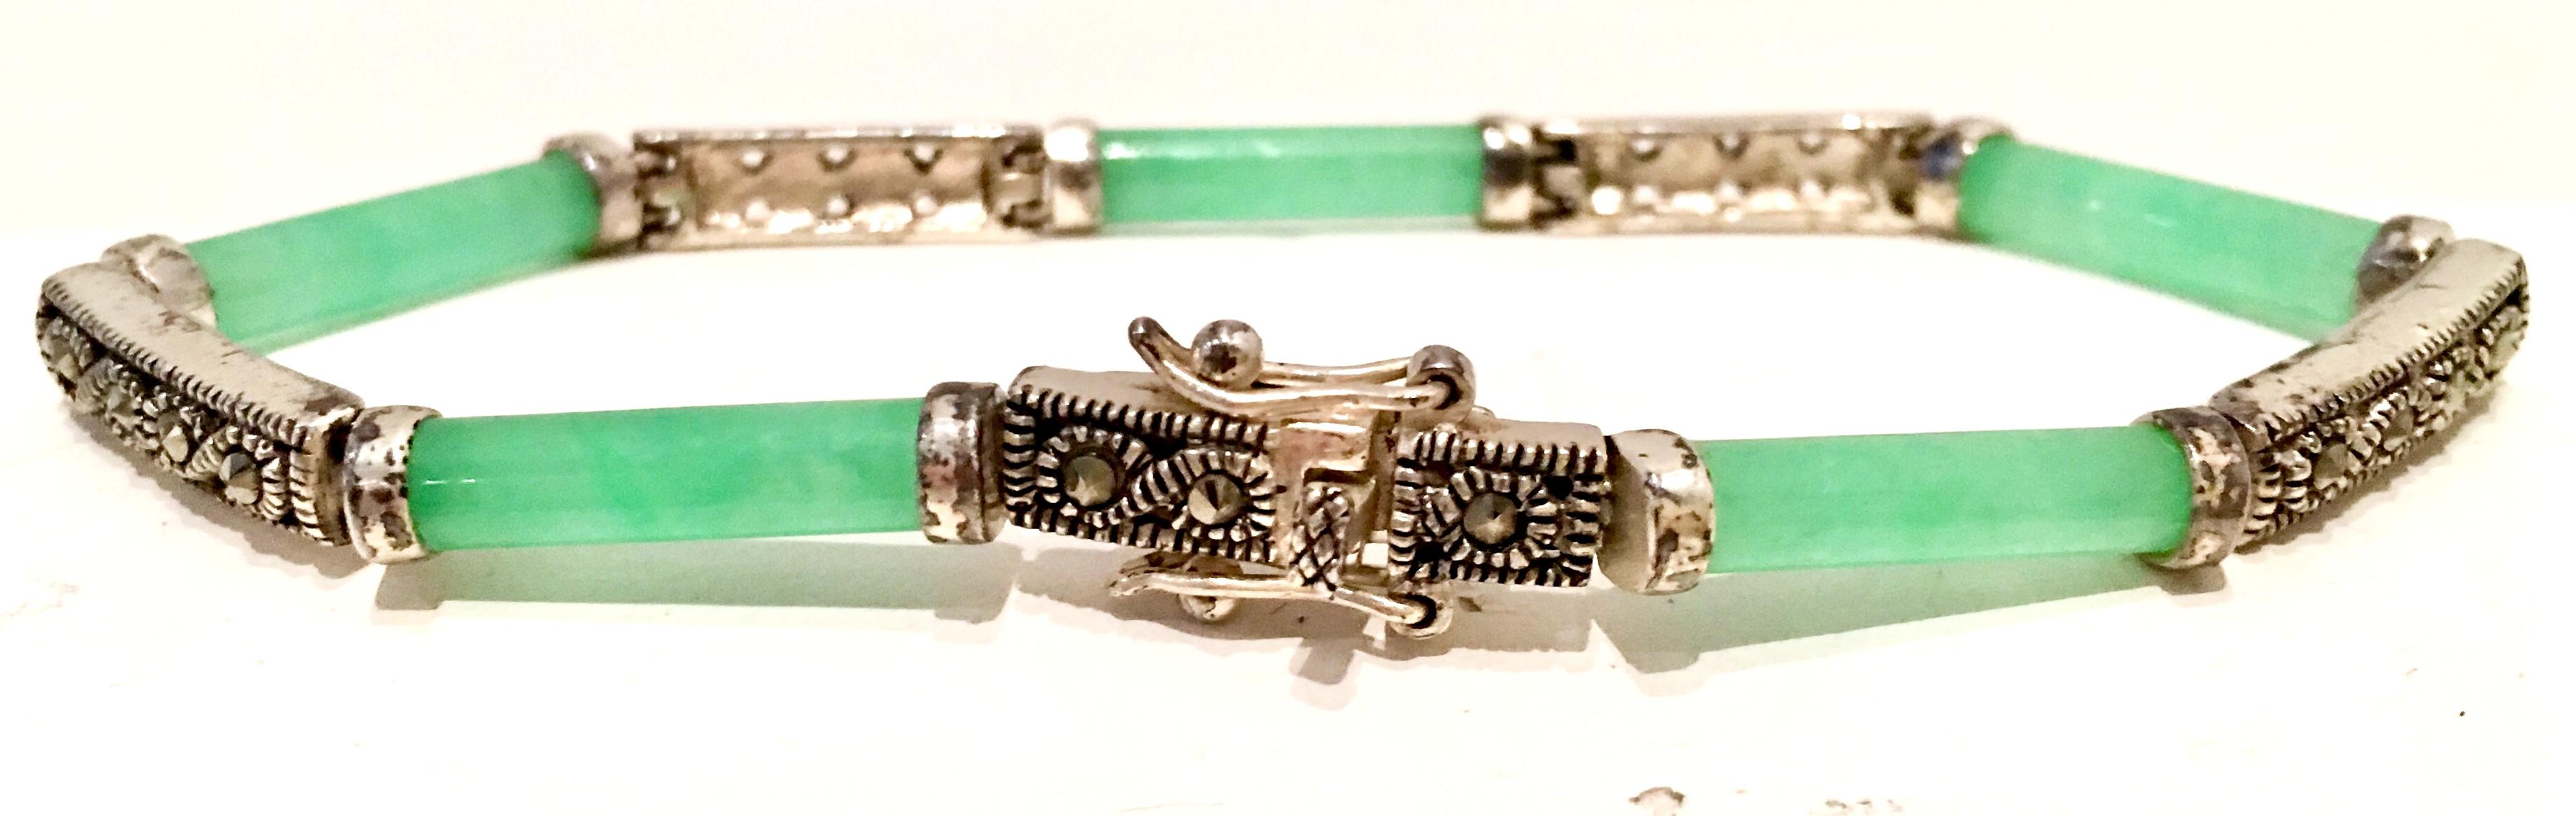 20th Century 925 Sterling Jadeite & Marcasite Link Bracelet For Sale 2